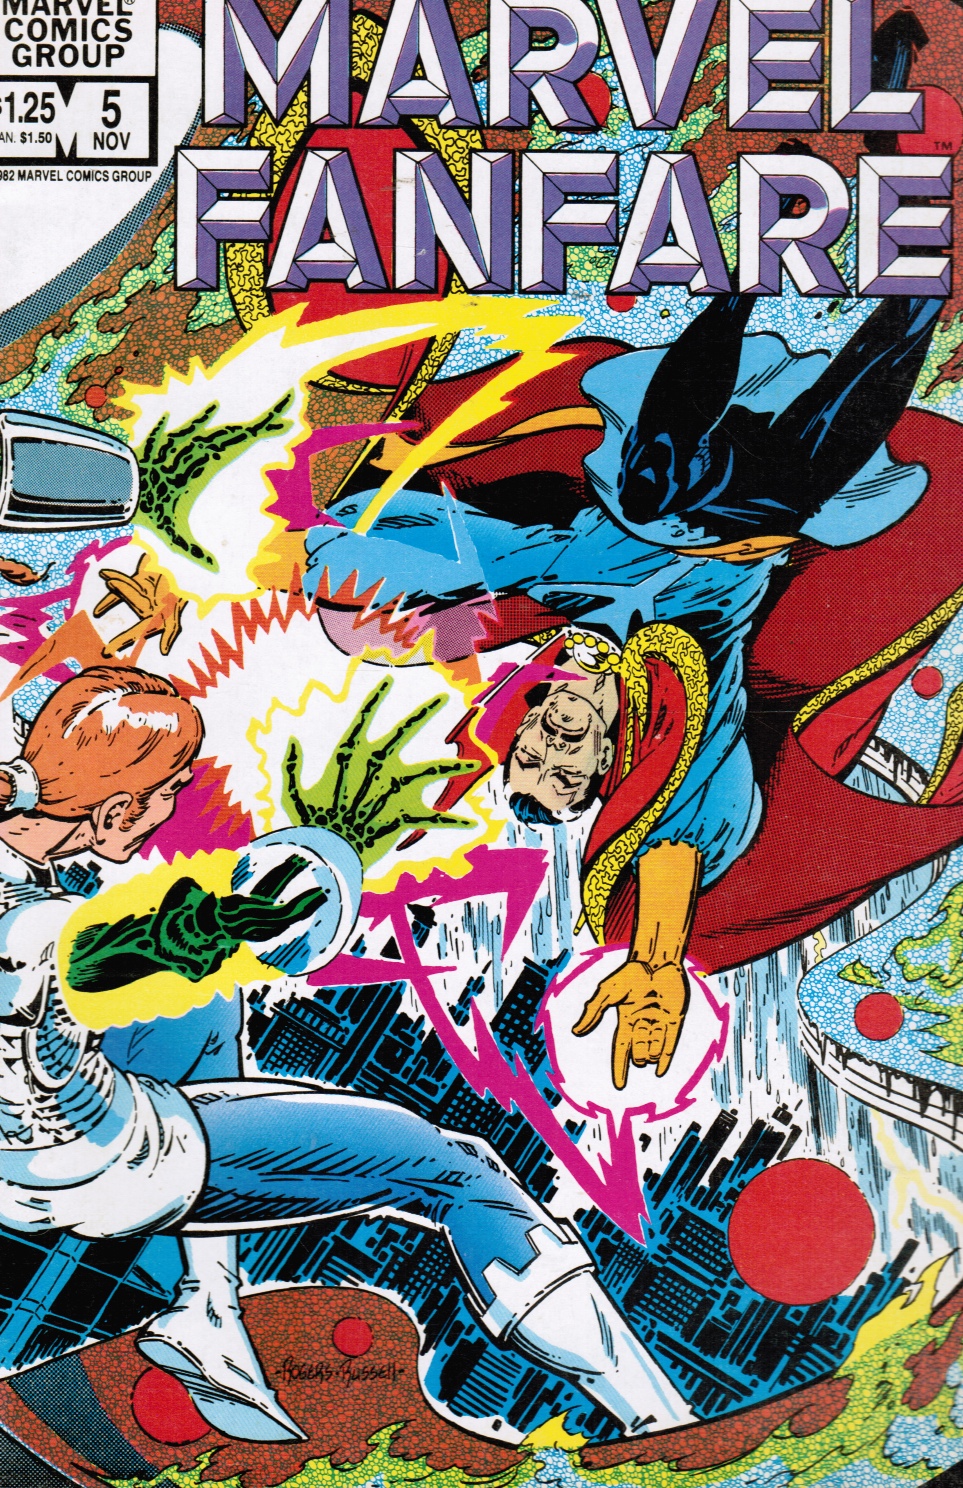 Image for Marvel Fanfare # 5 Nov "To Steal the Sorcerer's Soul!"